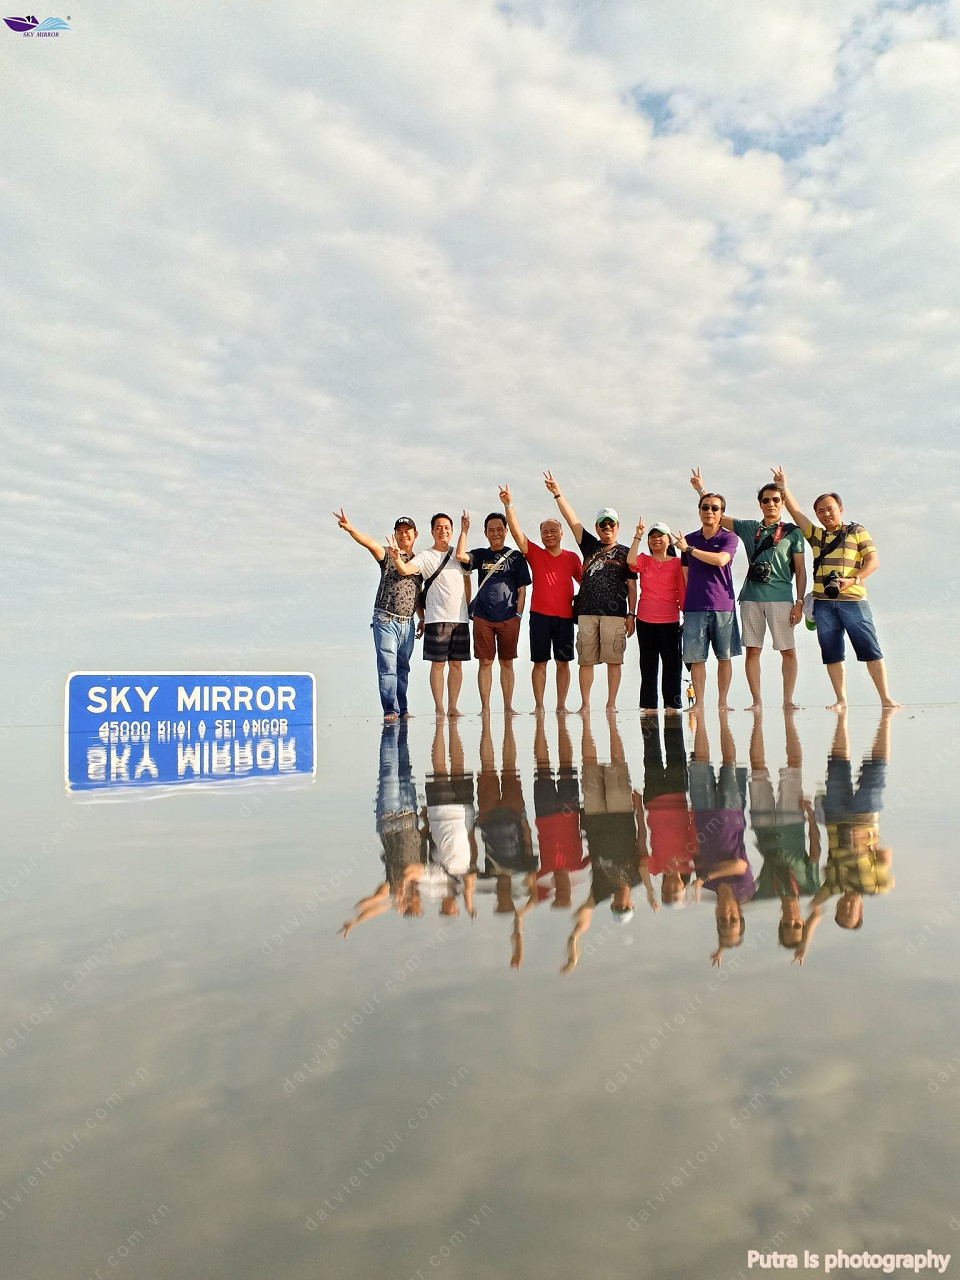 Check-in Sky Mirror - Gương Trời siêu ảo diệu ở Malaysia